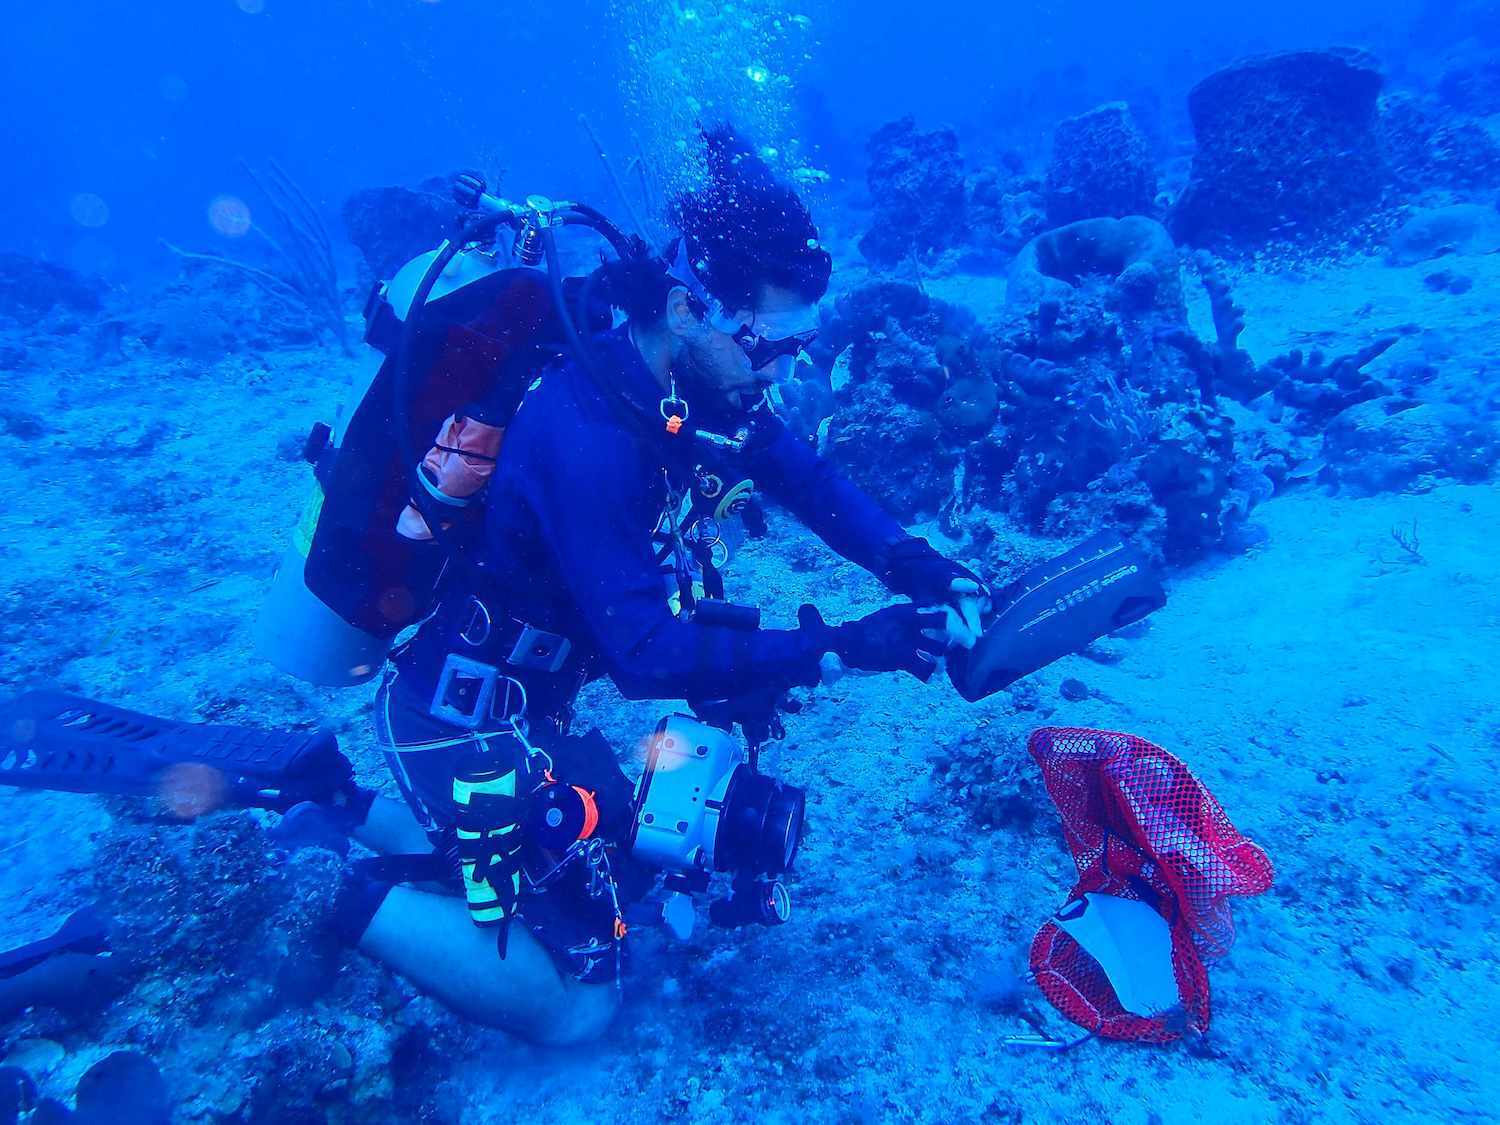 Diver under water deploying Nortek instrument